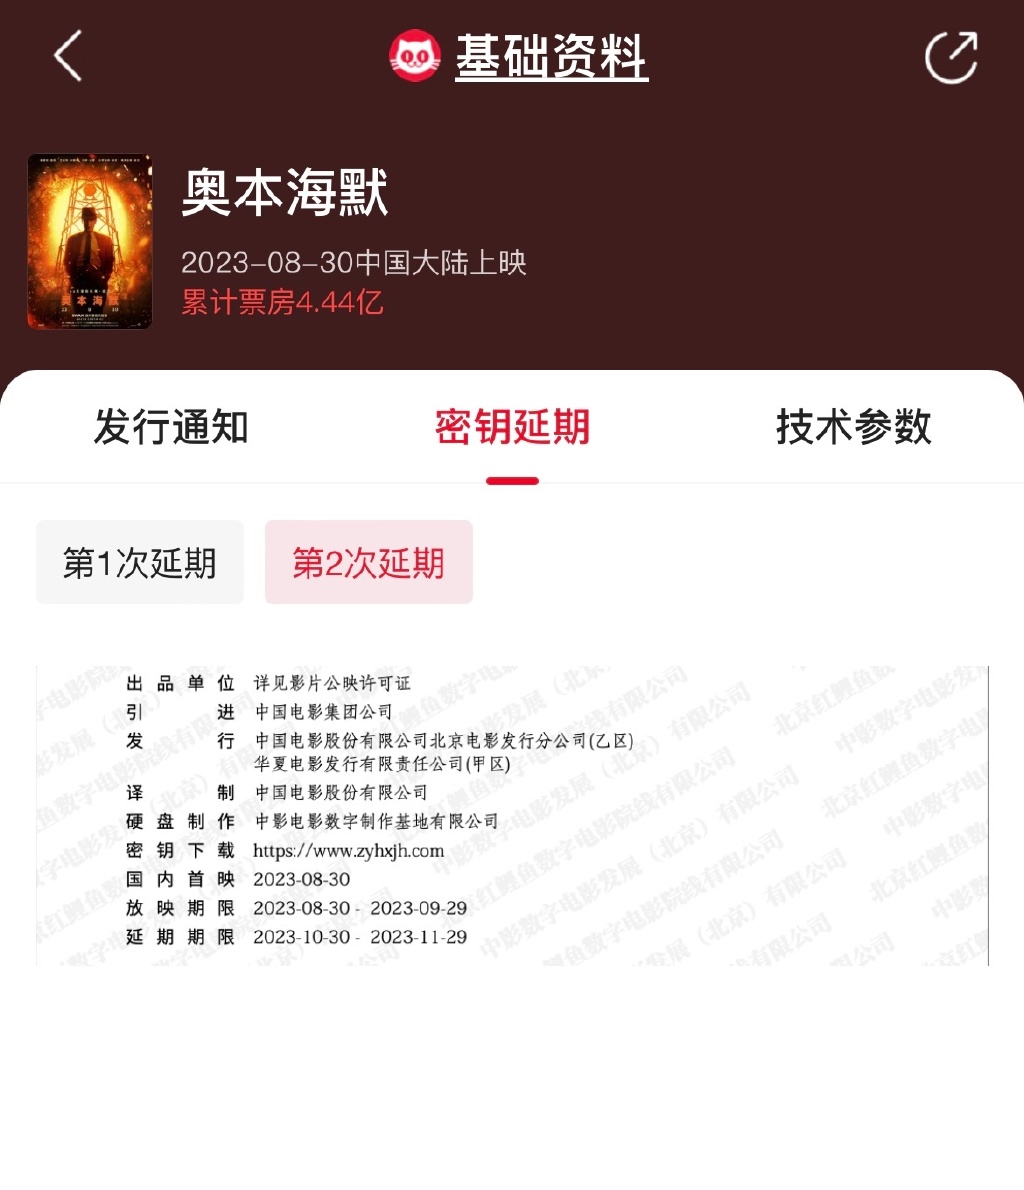 《奥本海默》中国本天再次延伸上映 当前票房4.4亿